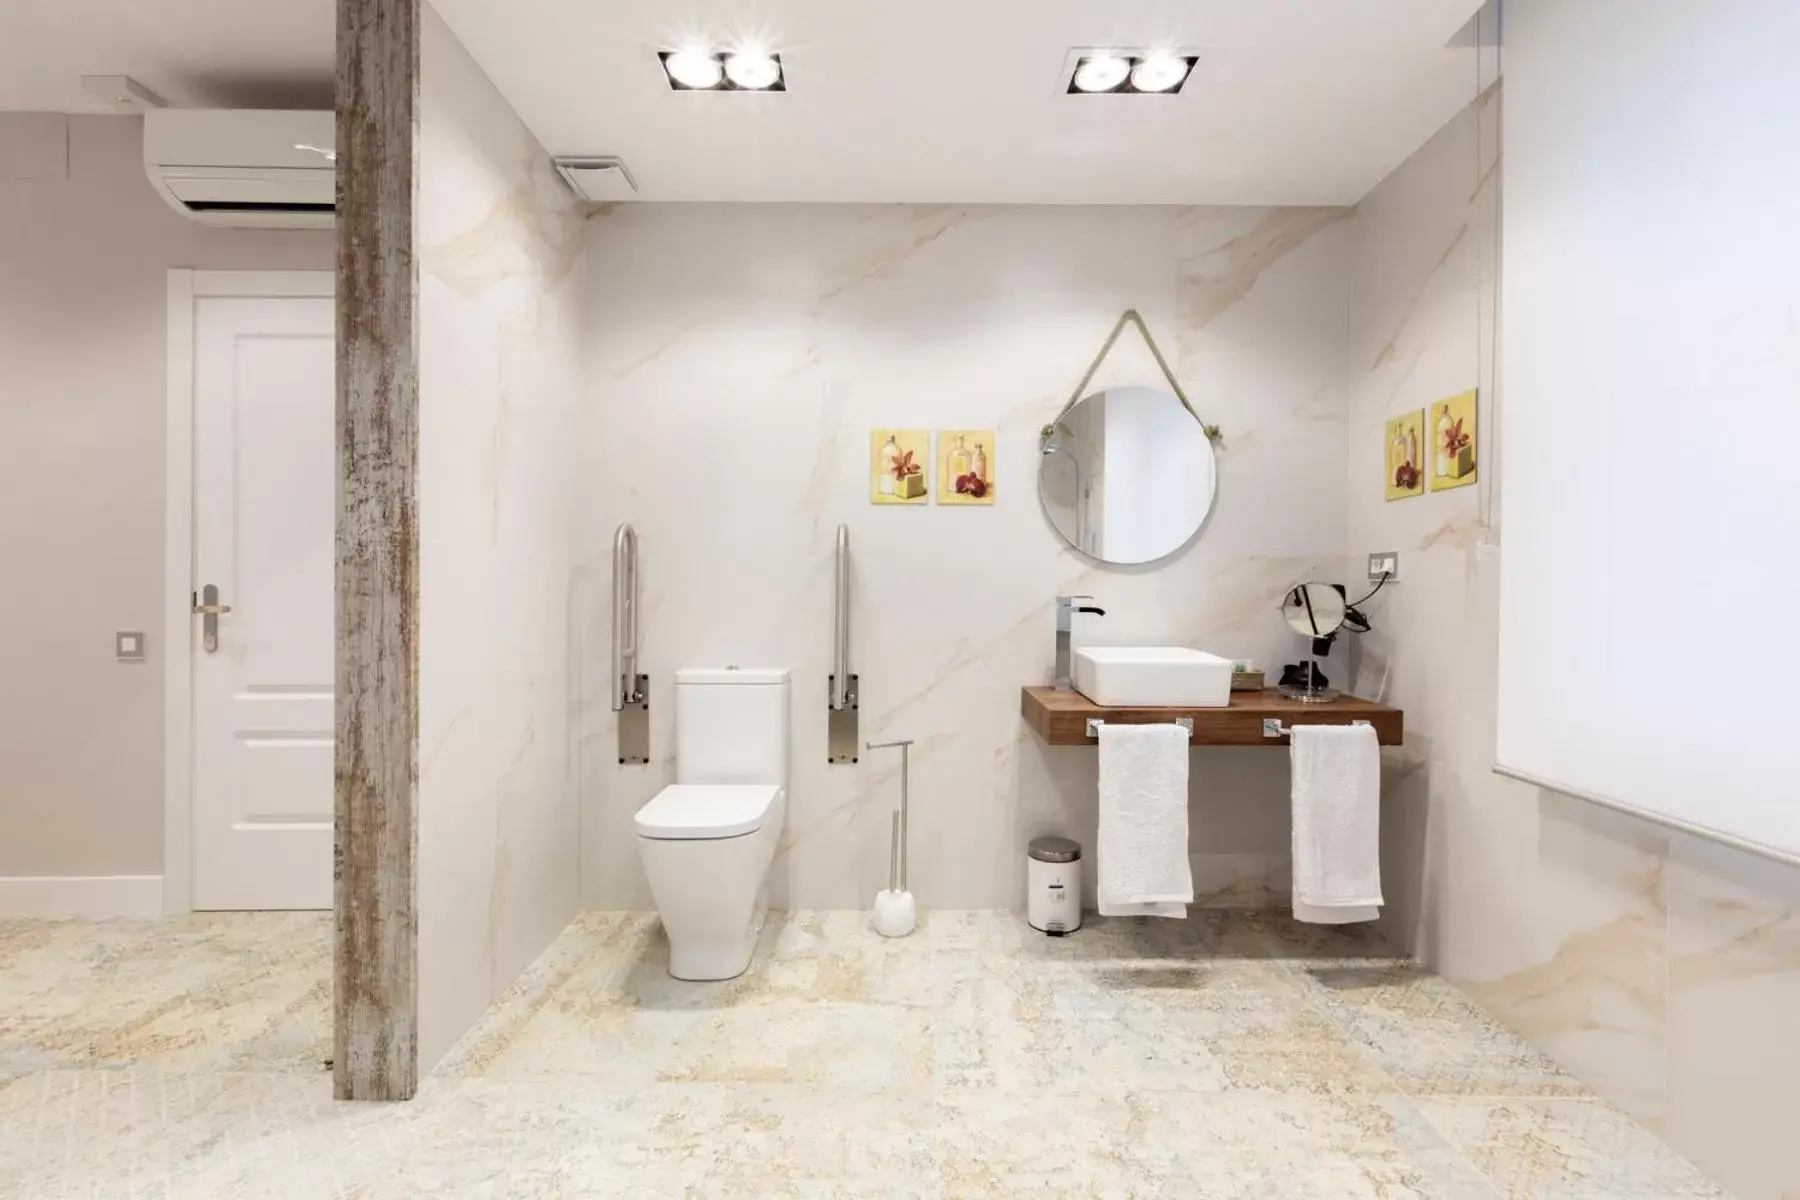 Toilet, Bathroom in Urban Sabadell